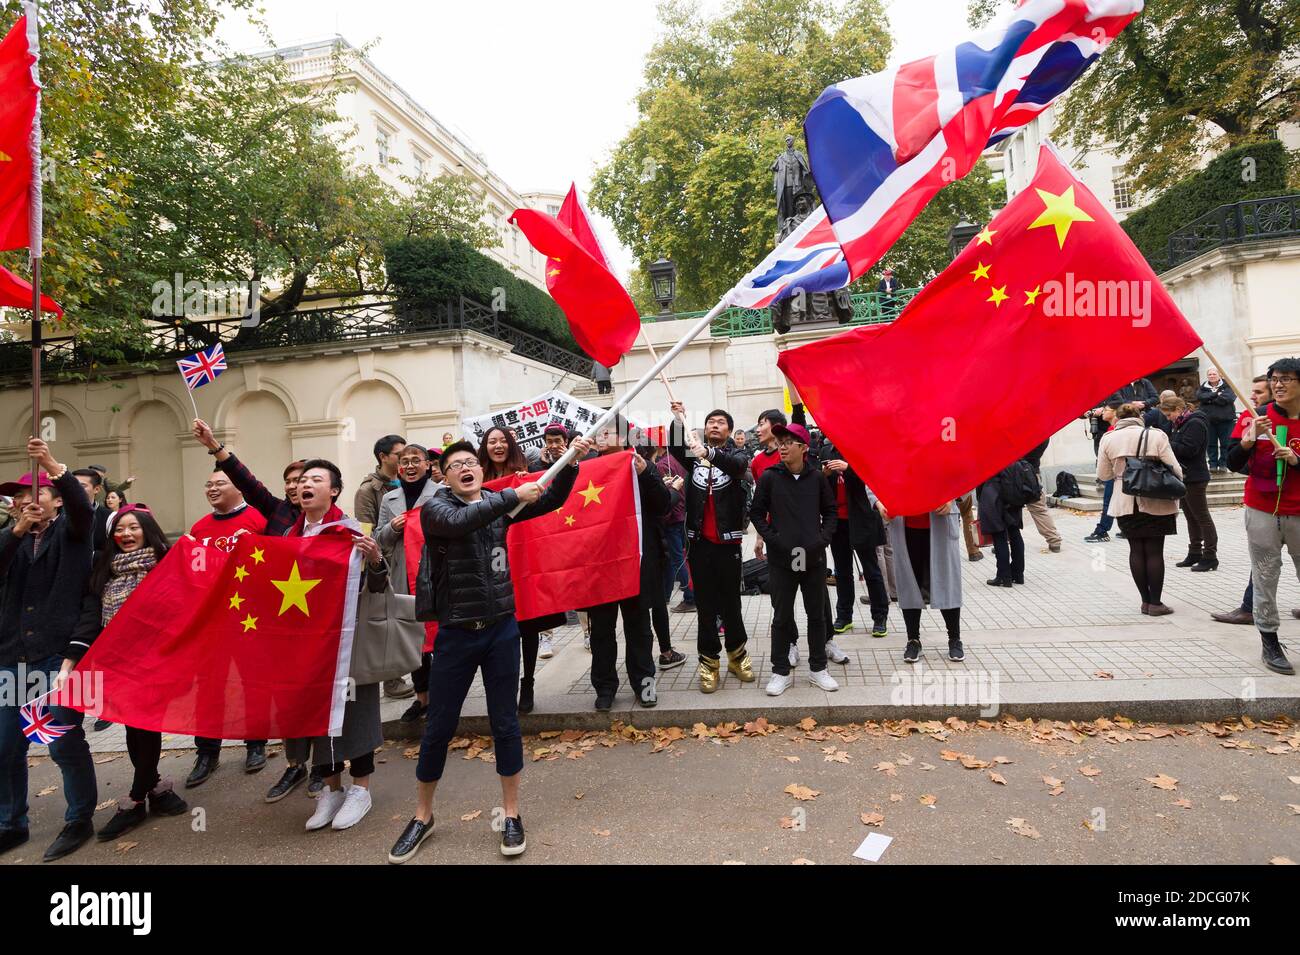 Les partisans de la Chine ont accueilli le président chinois Xi Jinping le premier jour de sa visite d'État en Grande-Bretagne. The Mall, Saint Jame's Park, Westminster, Londres, Royaume-Uni. 20 octobre 2015 Banque D'Images